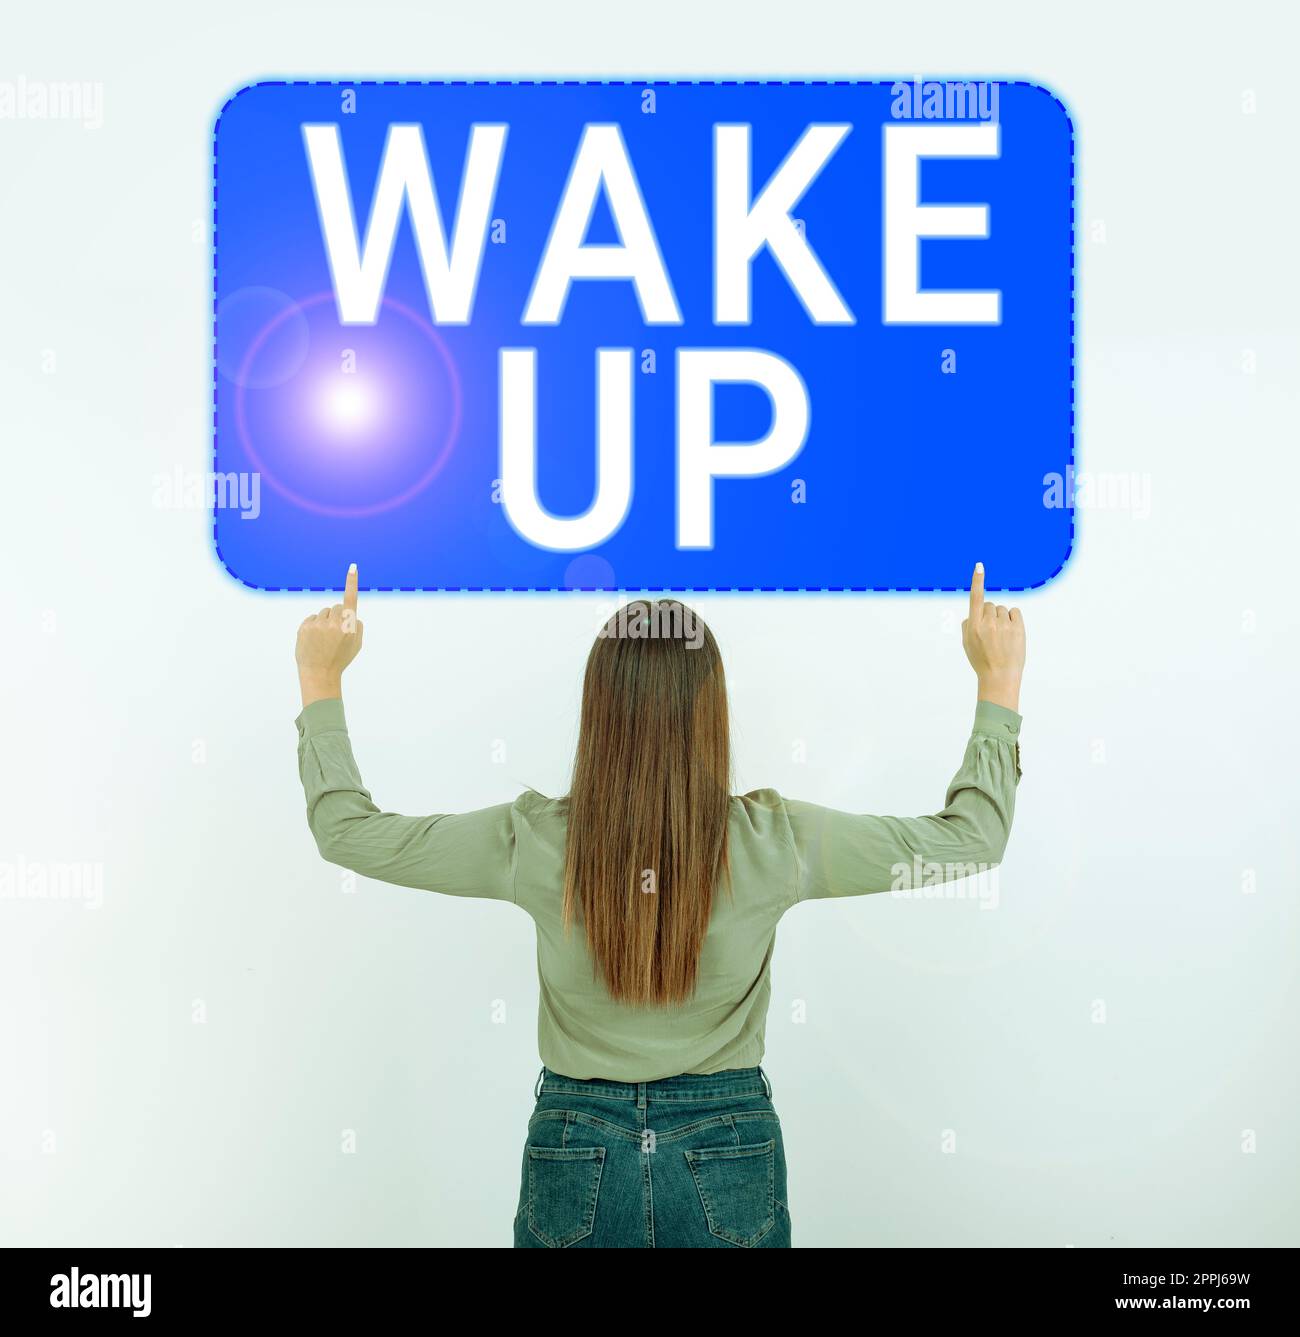 Inspiration montrant l'inscription Wake Up. Mot écrit sur une instance d'une personne se réveillant ou se réveillant Banque D'Images